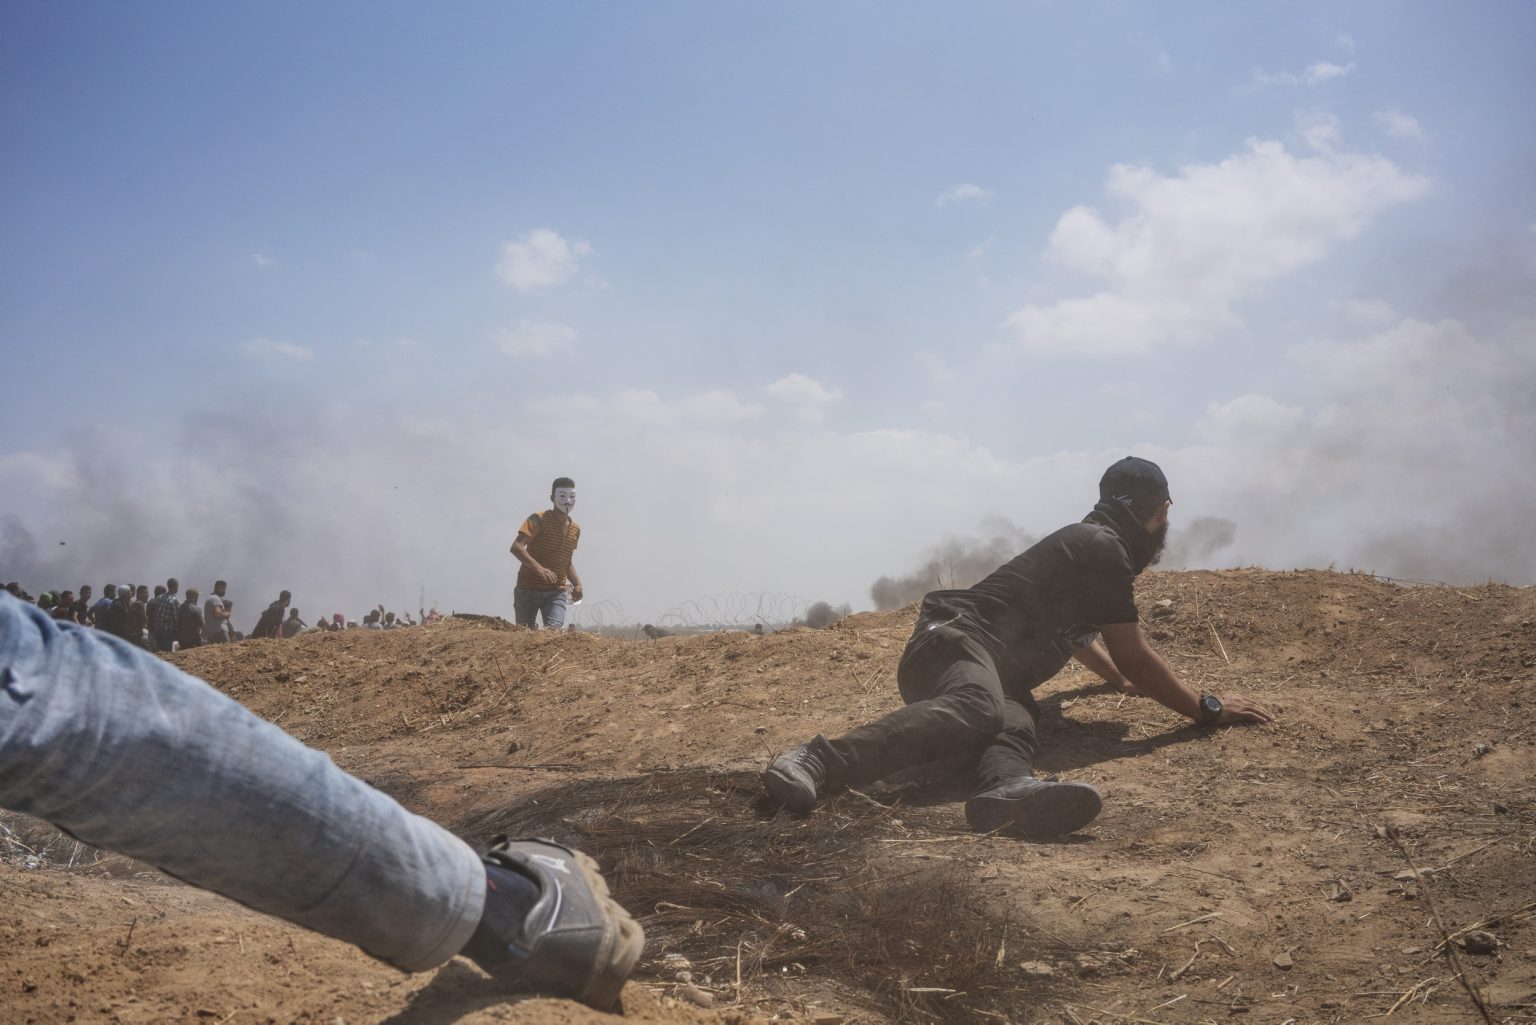 Gaza Strip, May 2018 - A man hides behind an embankment during the protest along the Gaza-Israel border. ><
Striscia di Gaza, maggio 2018 - Un uomo si ripara durante le proteste lungo il confine tra Gaza e Israele.